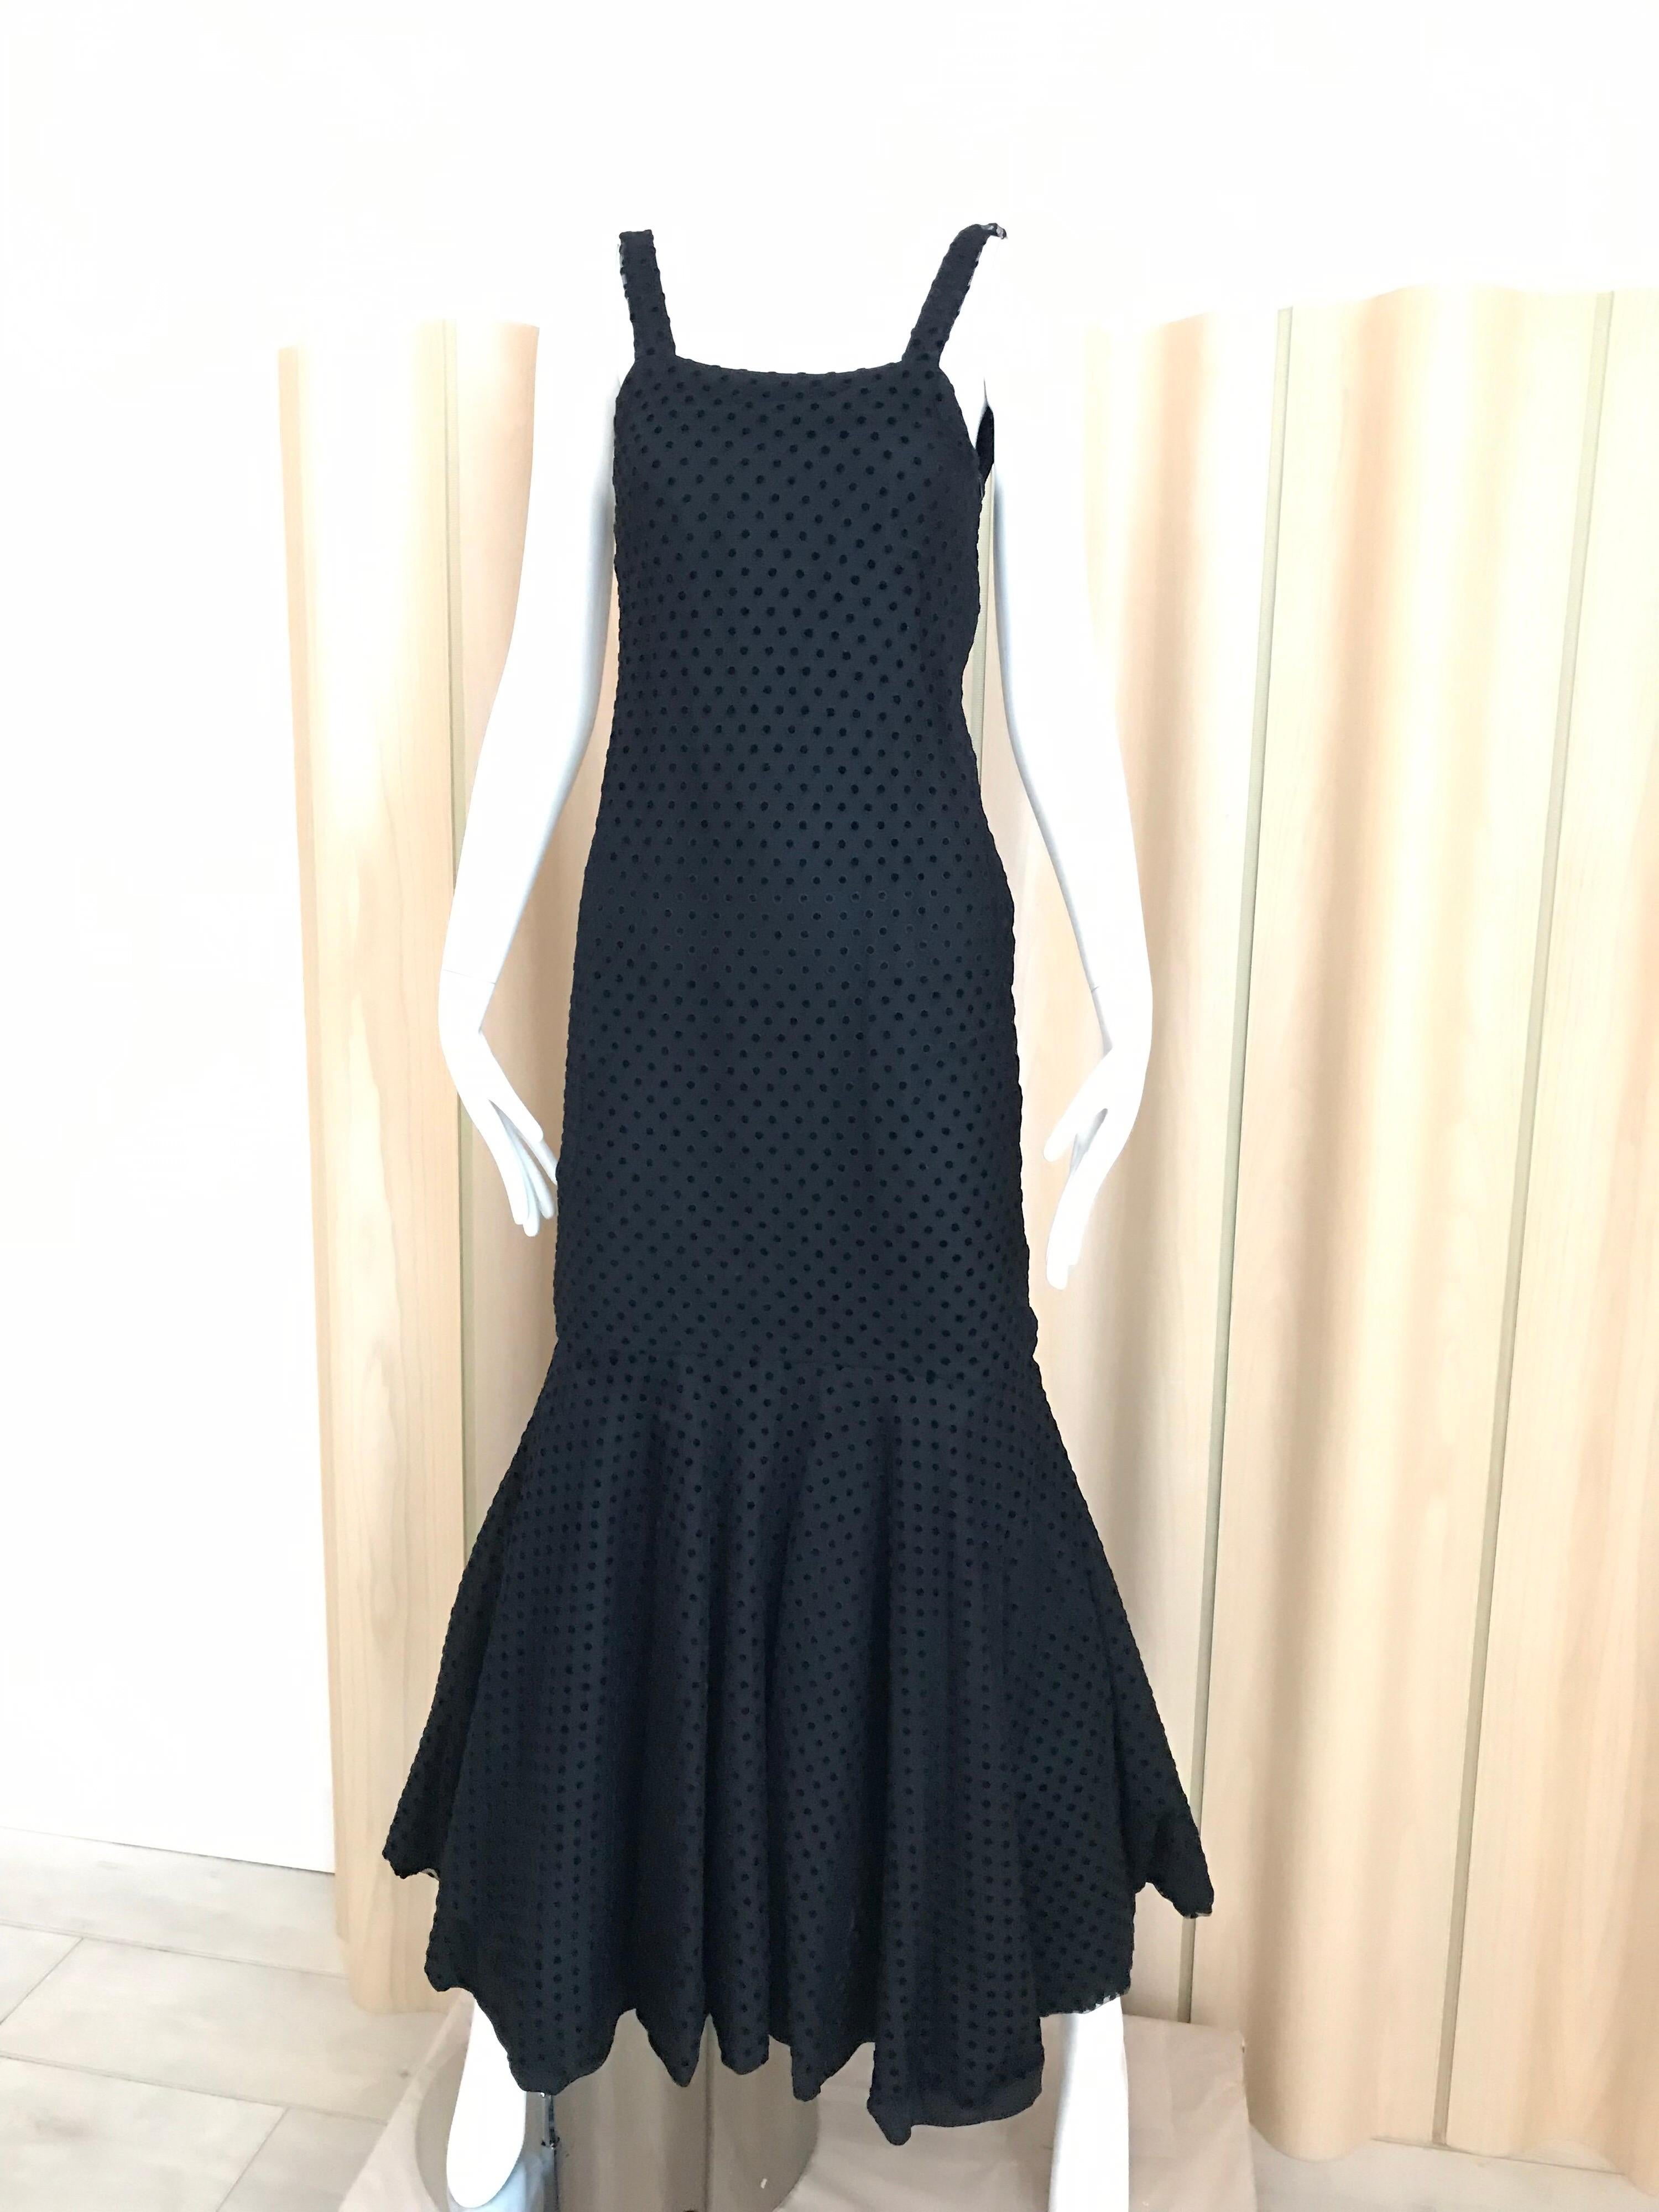 Christian Dior Black Net Dress with Velvet Dot Dress For Sale 5